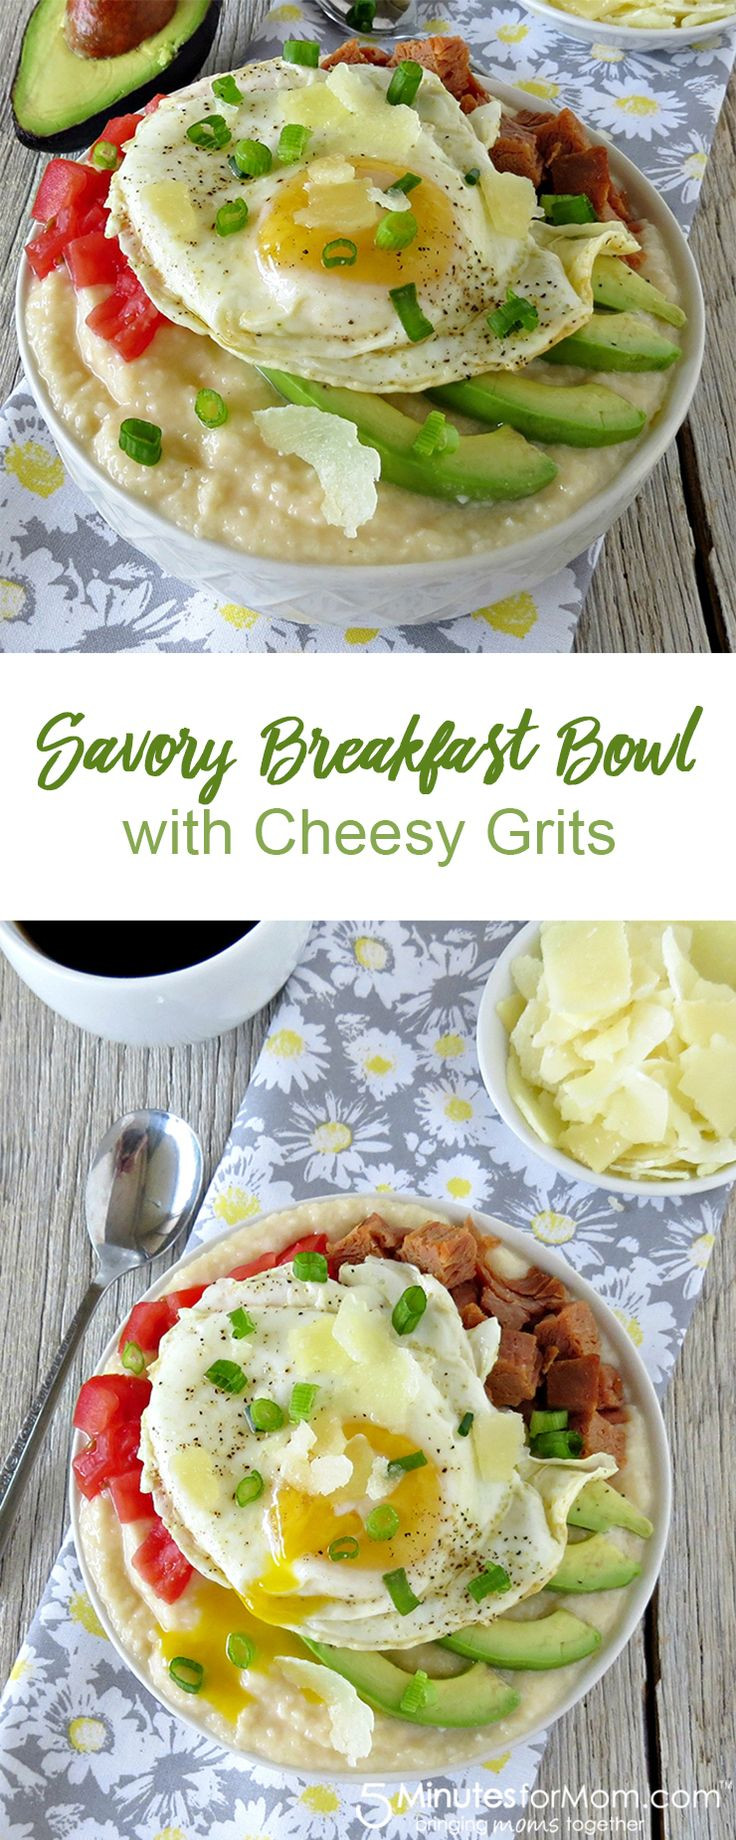 Grits For Breakfast Healthy
 Best 25 Grits recipe ideas on Pinterest